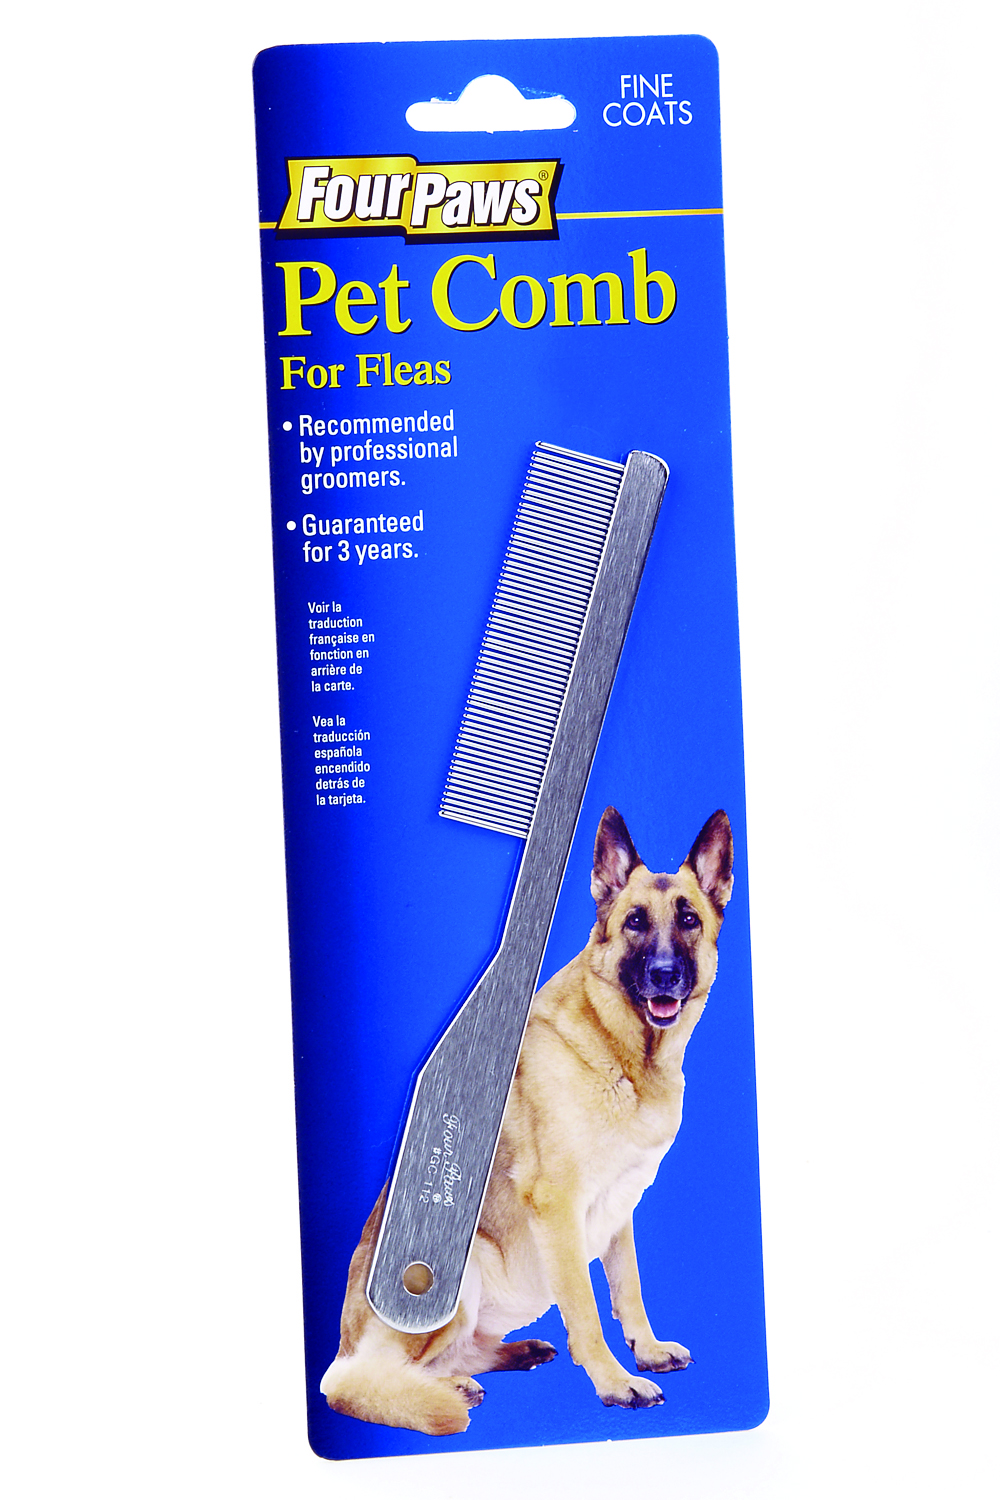 Pet Comb - Average Coats